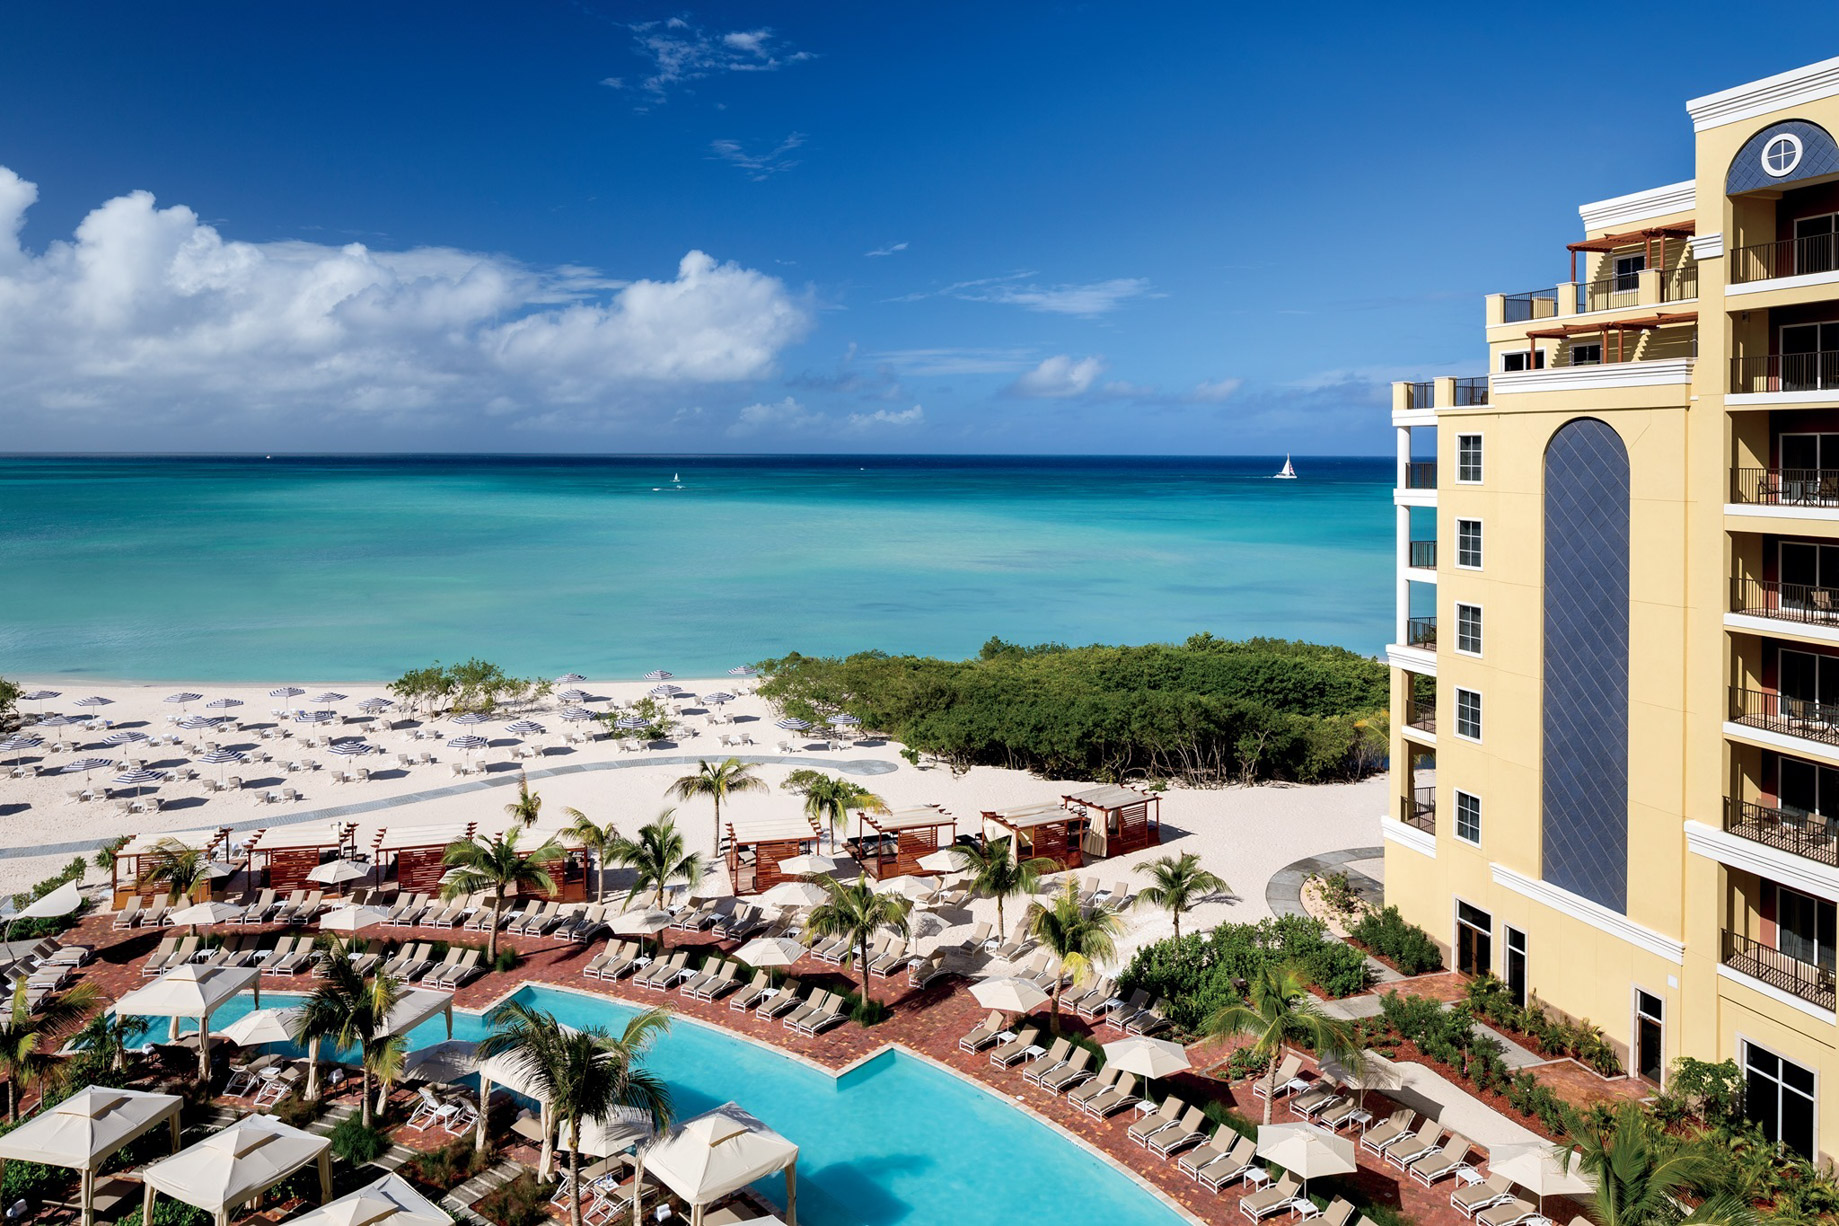 The Ritz-Carlton, Aruba Resort – Palm Beach, Aruba – Beach Pool and Ocean Aerial View